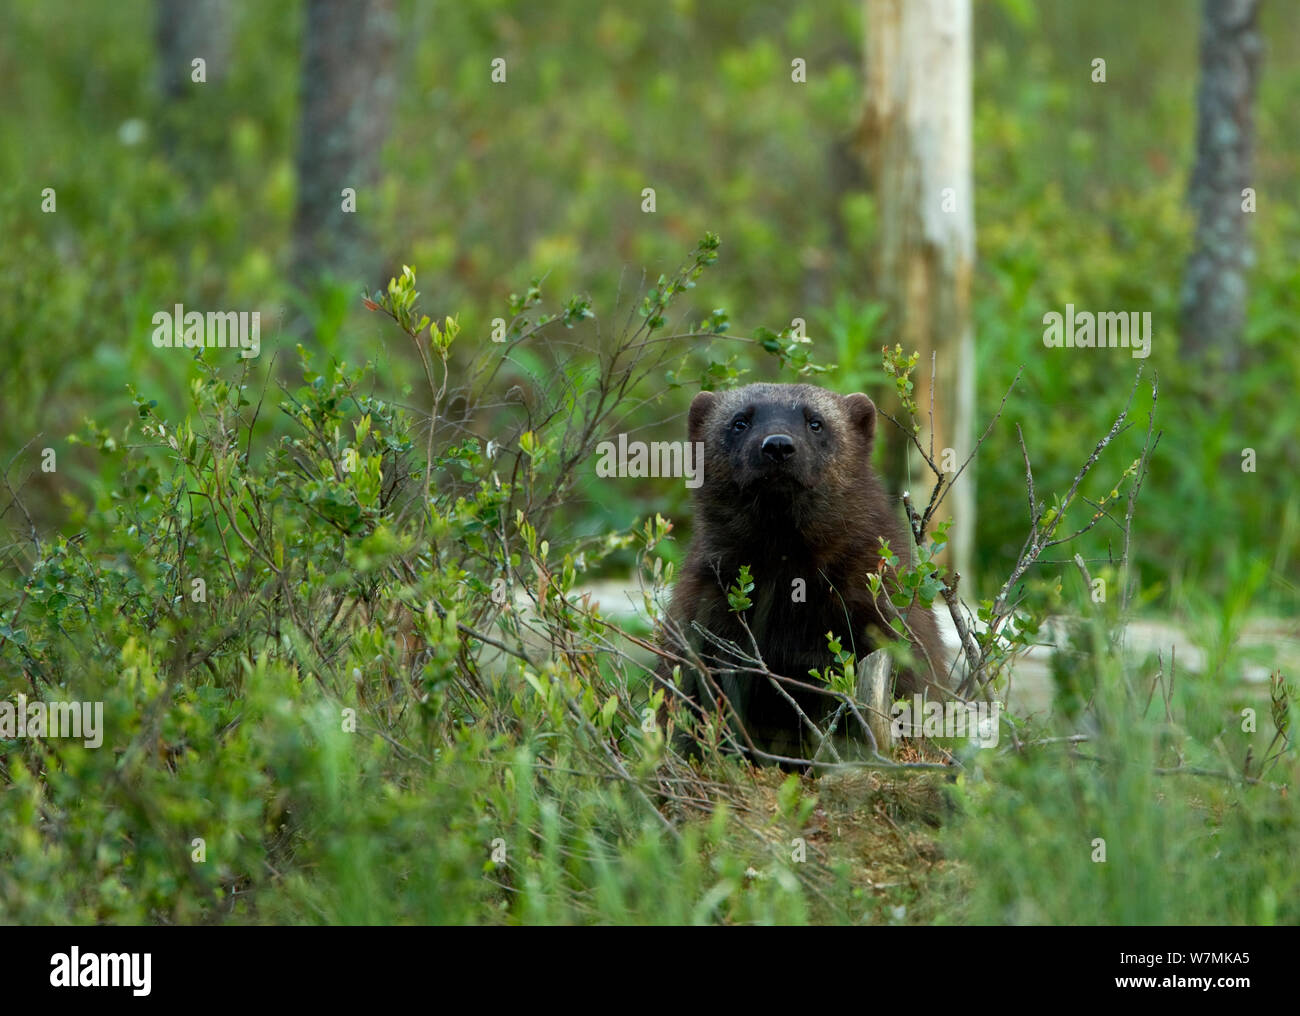 Wolverine (Gulo gulo) portrait in forest. Finland, Europe, June. Stock Photo